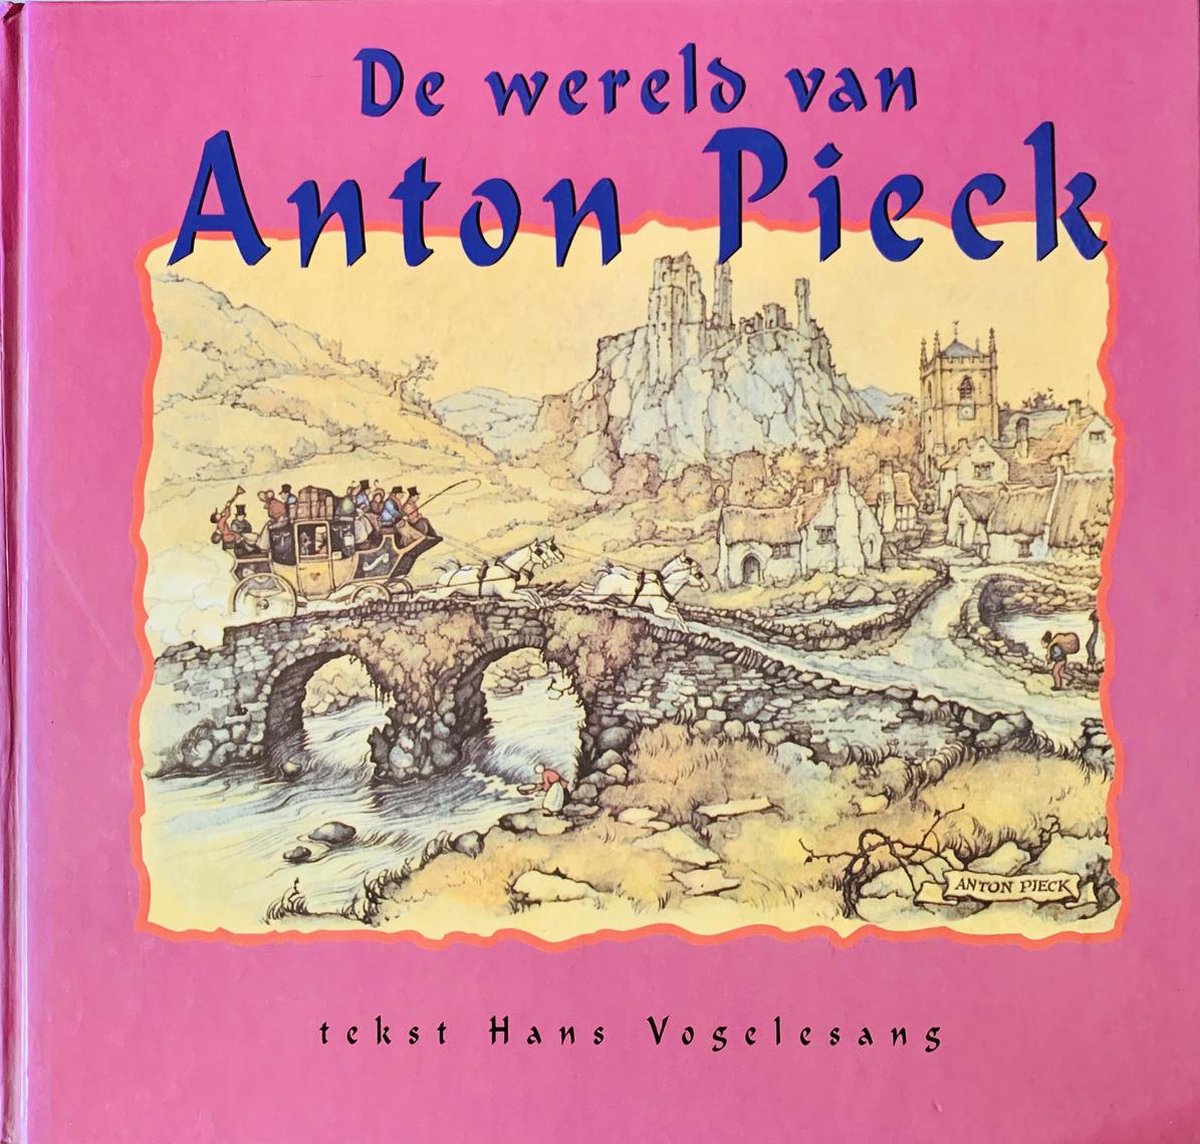 De wereld van Anton pieck